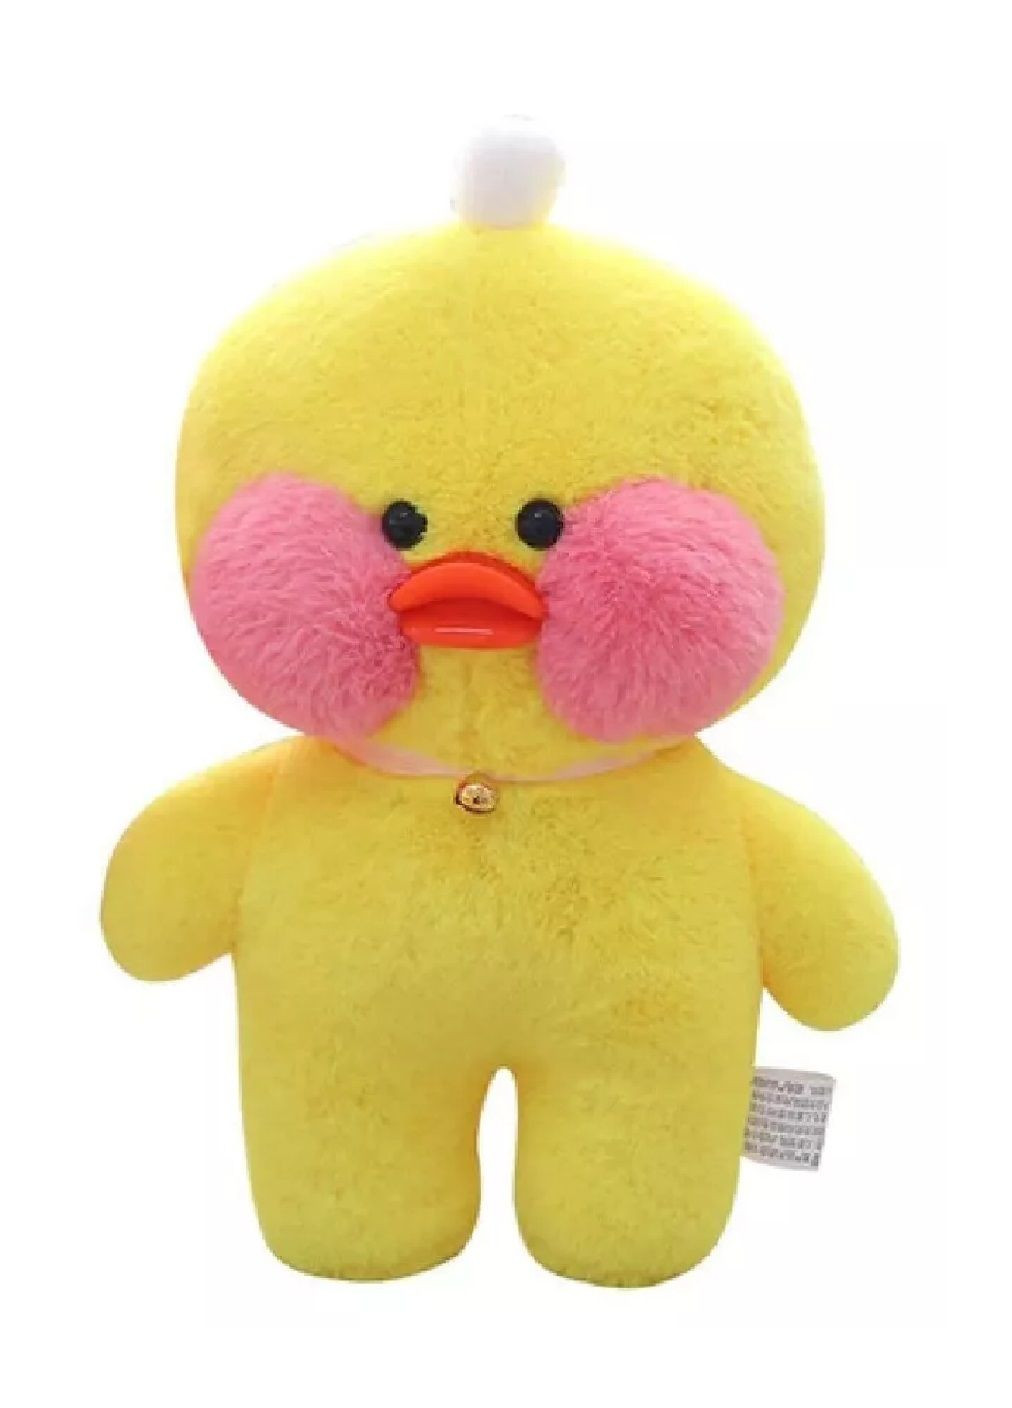 Мягкая детская плюшевая игрушка с аксессуарами желтая утка Лалафанфан в свитере 30 см (477070-Prob) С бантиком на повязке Unbranded (294050691)